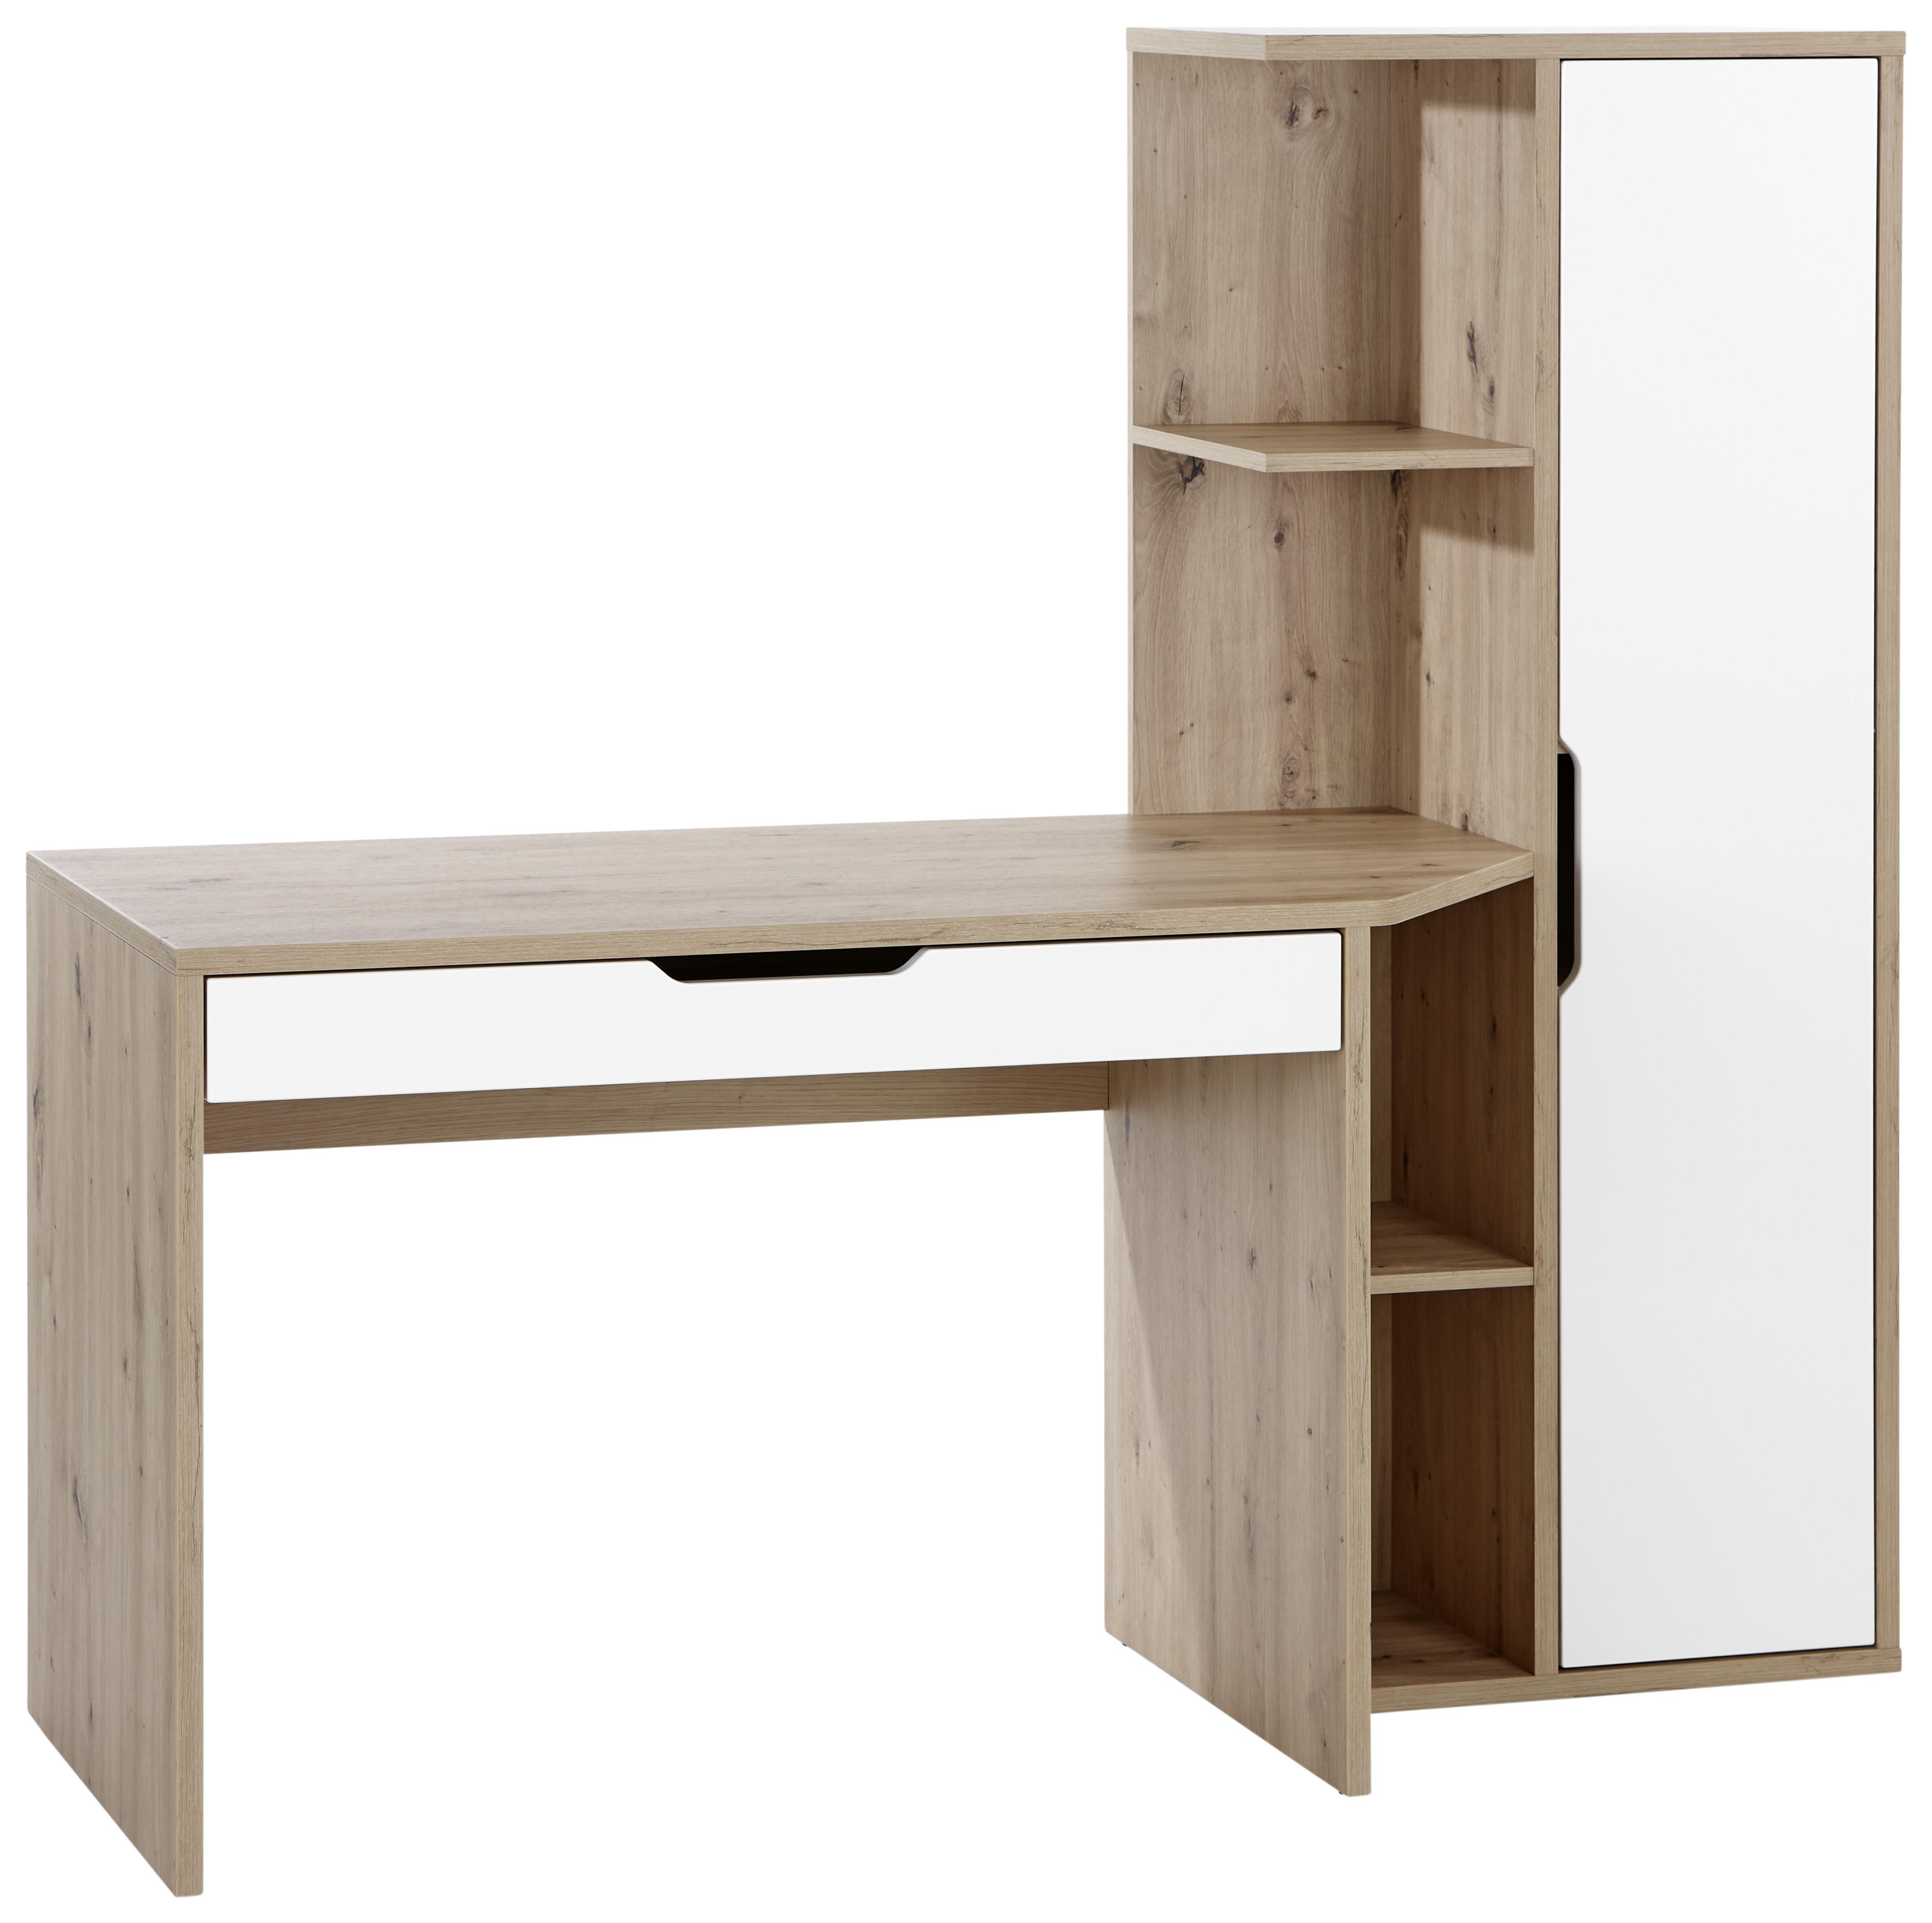 Schreibtisch mit Stauraum B: 160 cm H: 148,3 Laurent - MODERN, Holzwerkstoff (160/148,3/60cm)